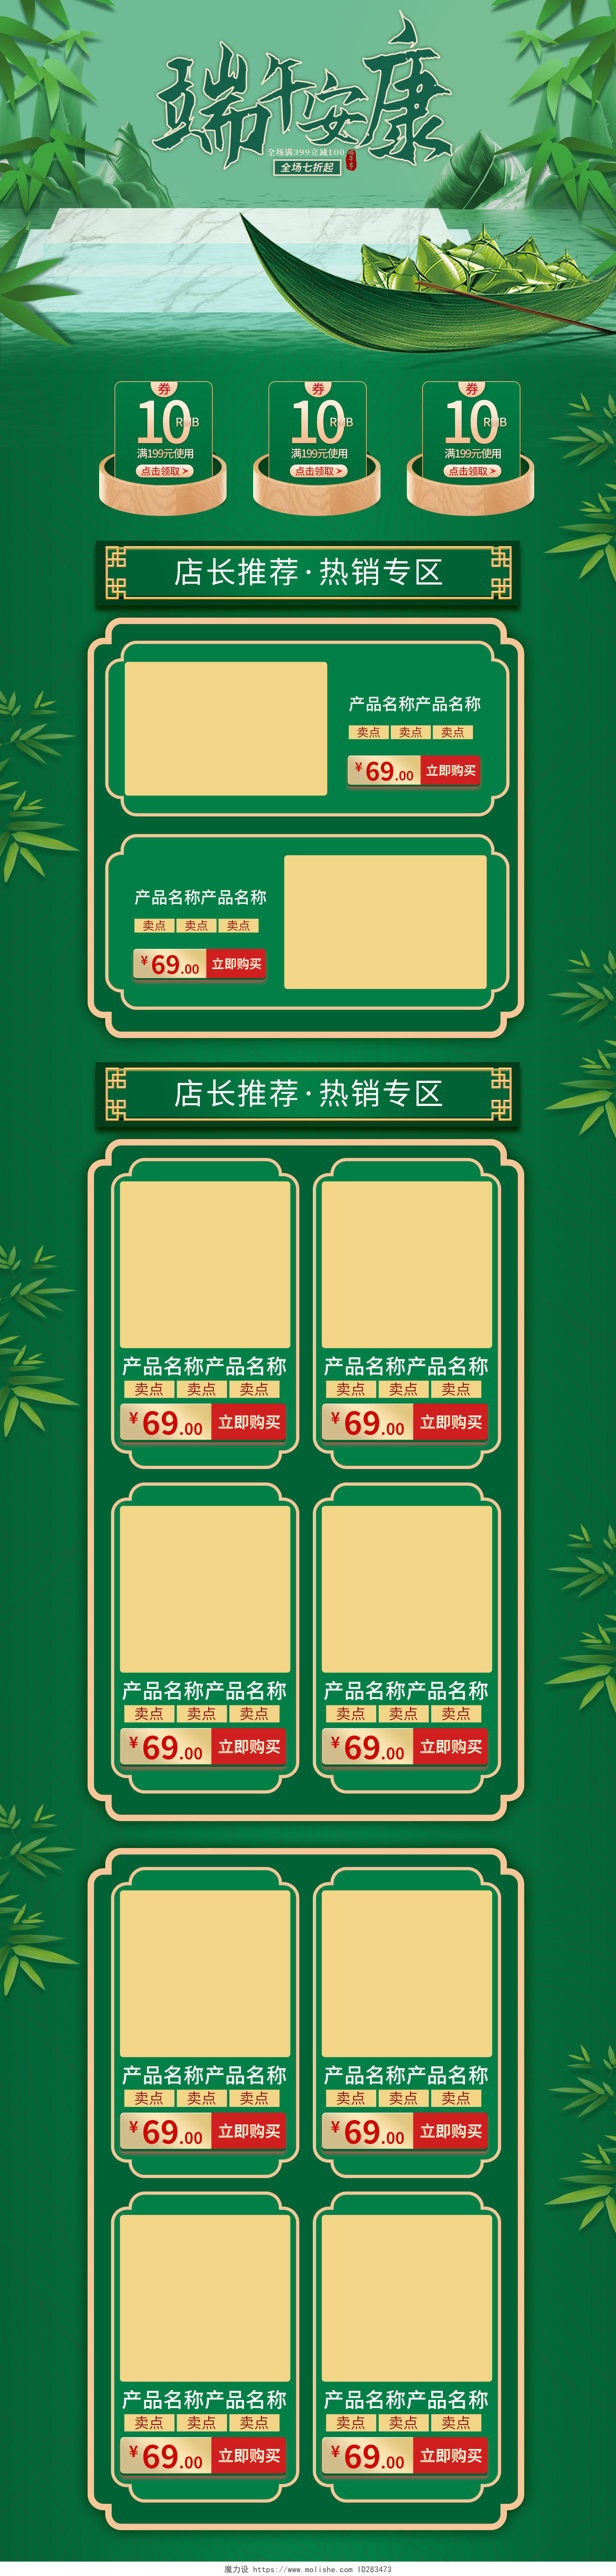 绿色手绘古风端午安康端午节粽子传统美食促销电商首页端午节首页